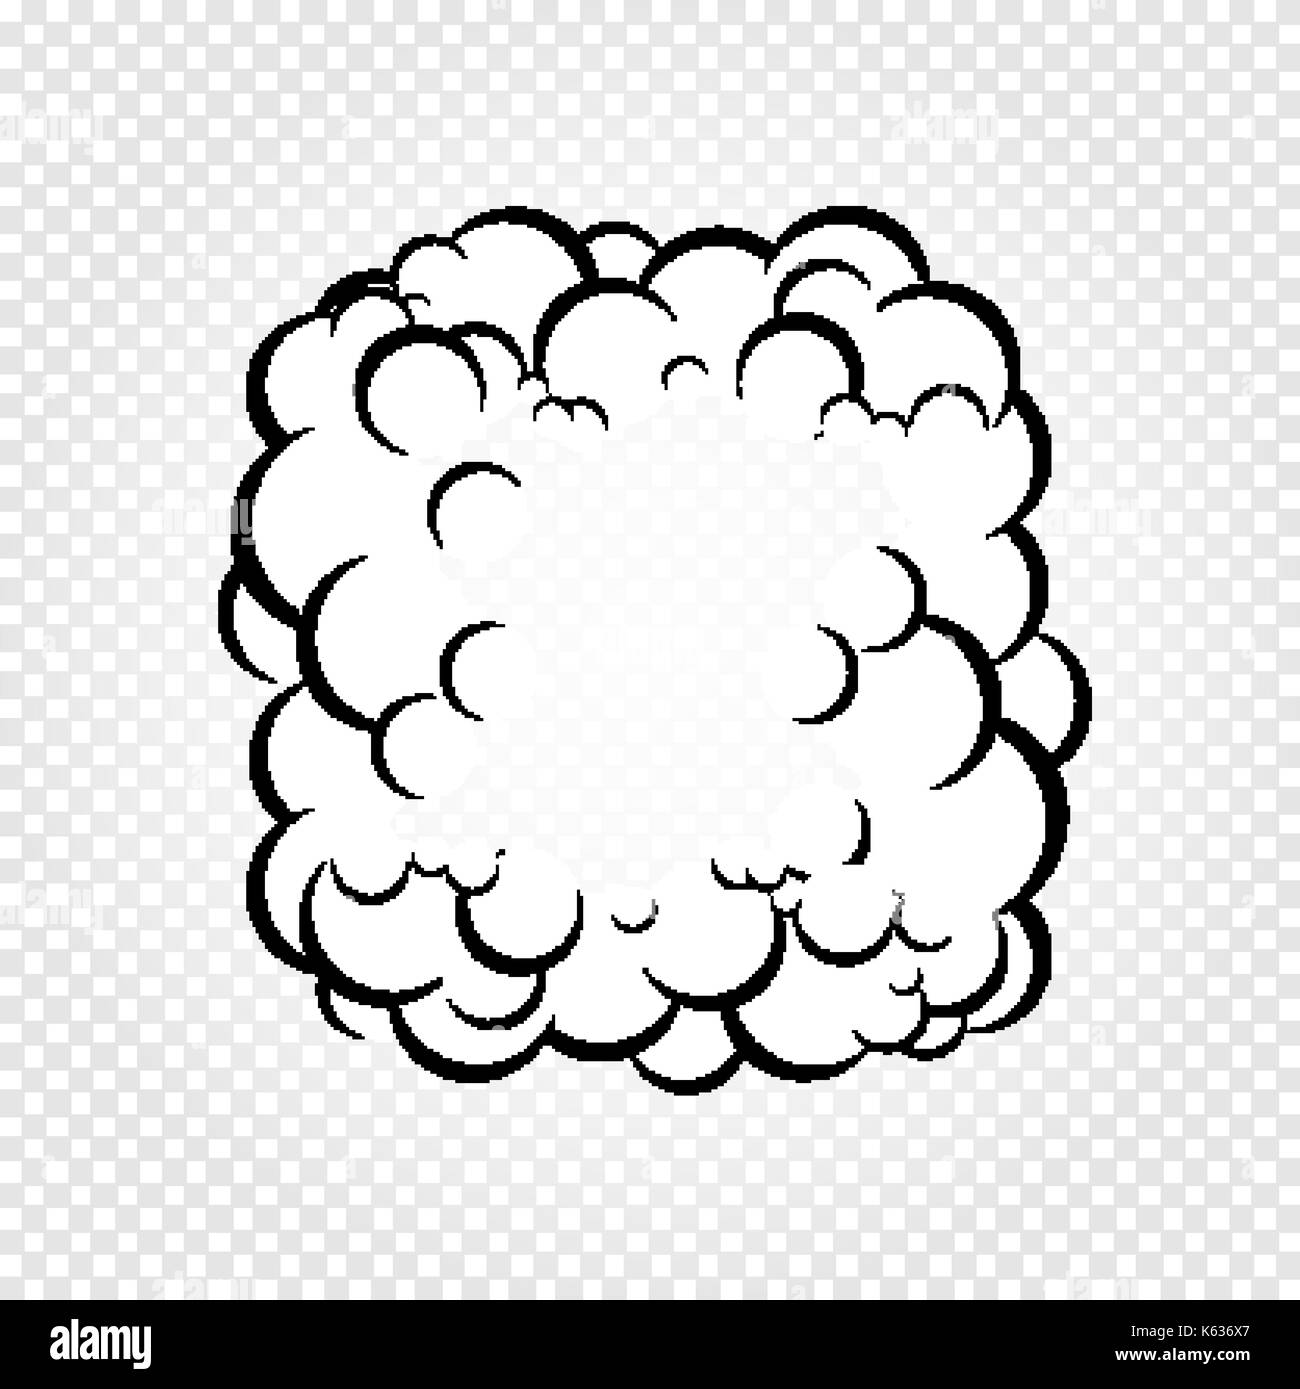 Isolierte cartoon Sprechblasen, Frames von Rauch oder Dampf, Comics dialog Cloud, Vector Illustration auf weißen transparenten Hintergrund. Stock Vektor